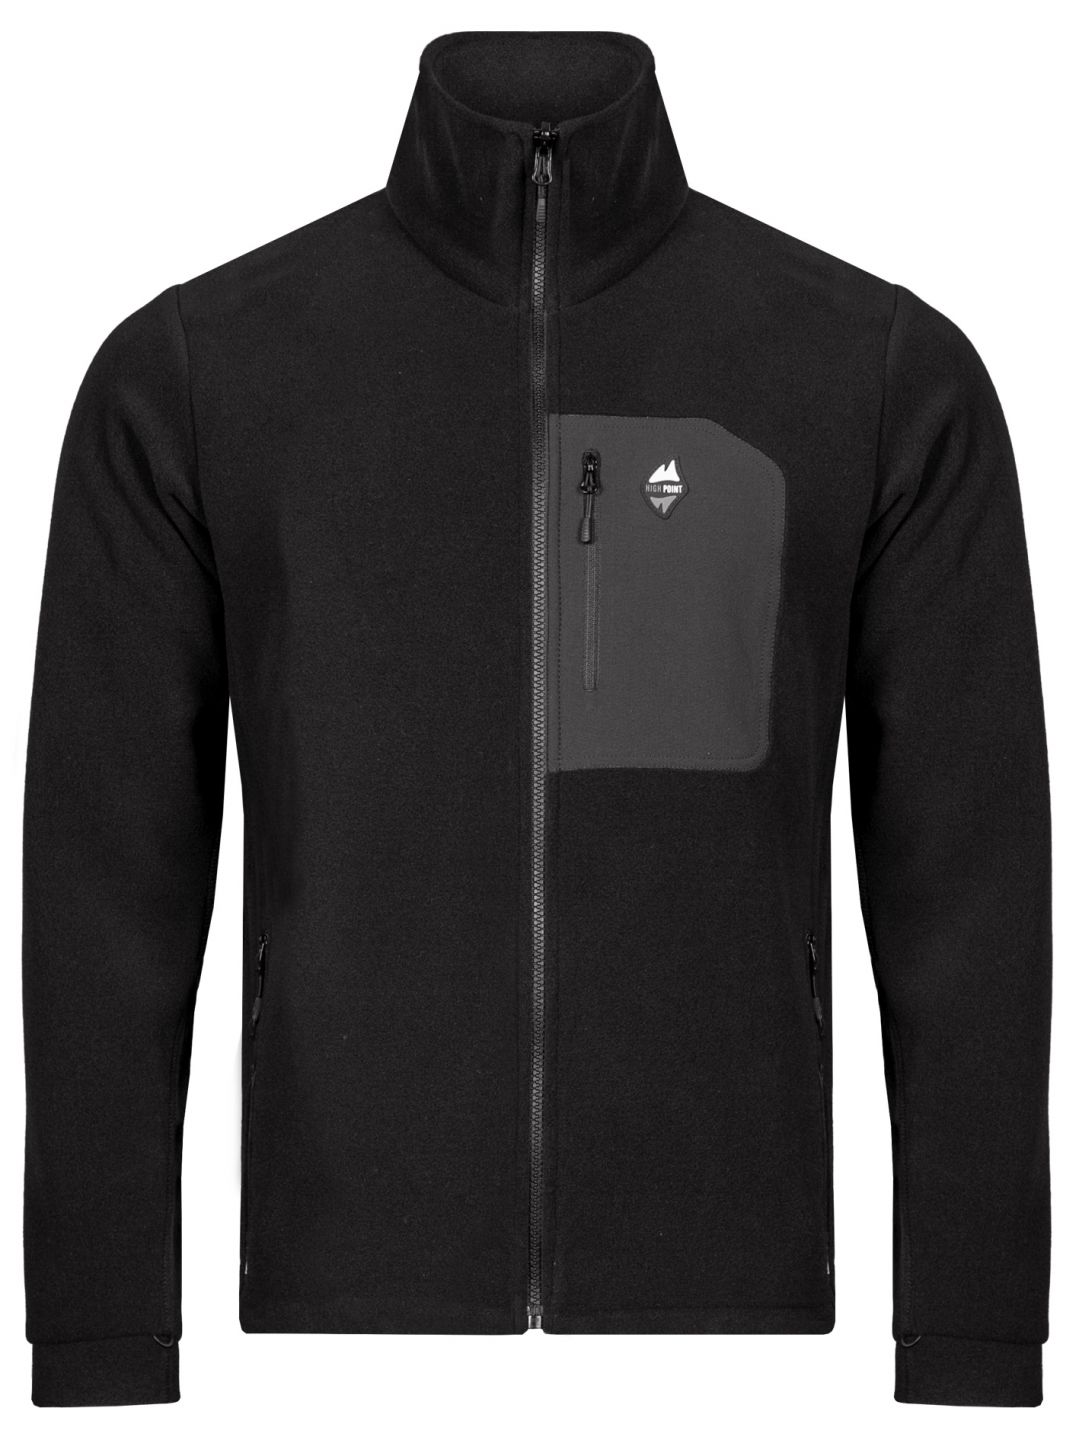 HIGH POINT INTERIOR 3.0 jacket Black varianta: M